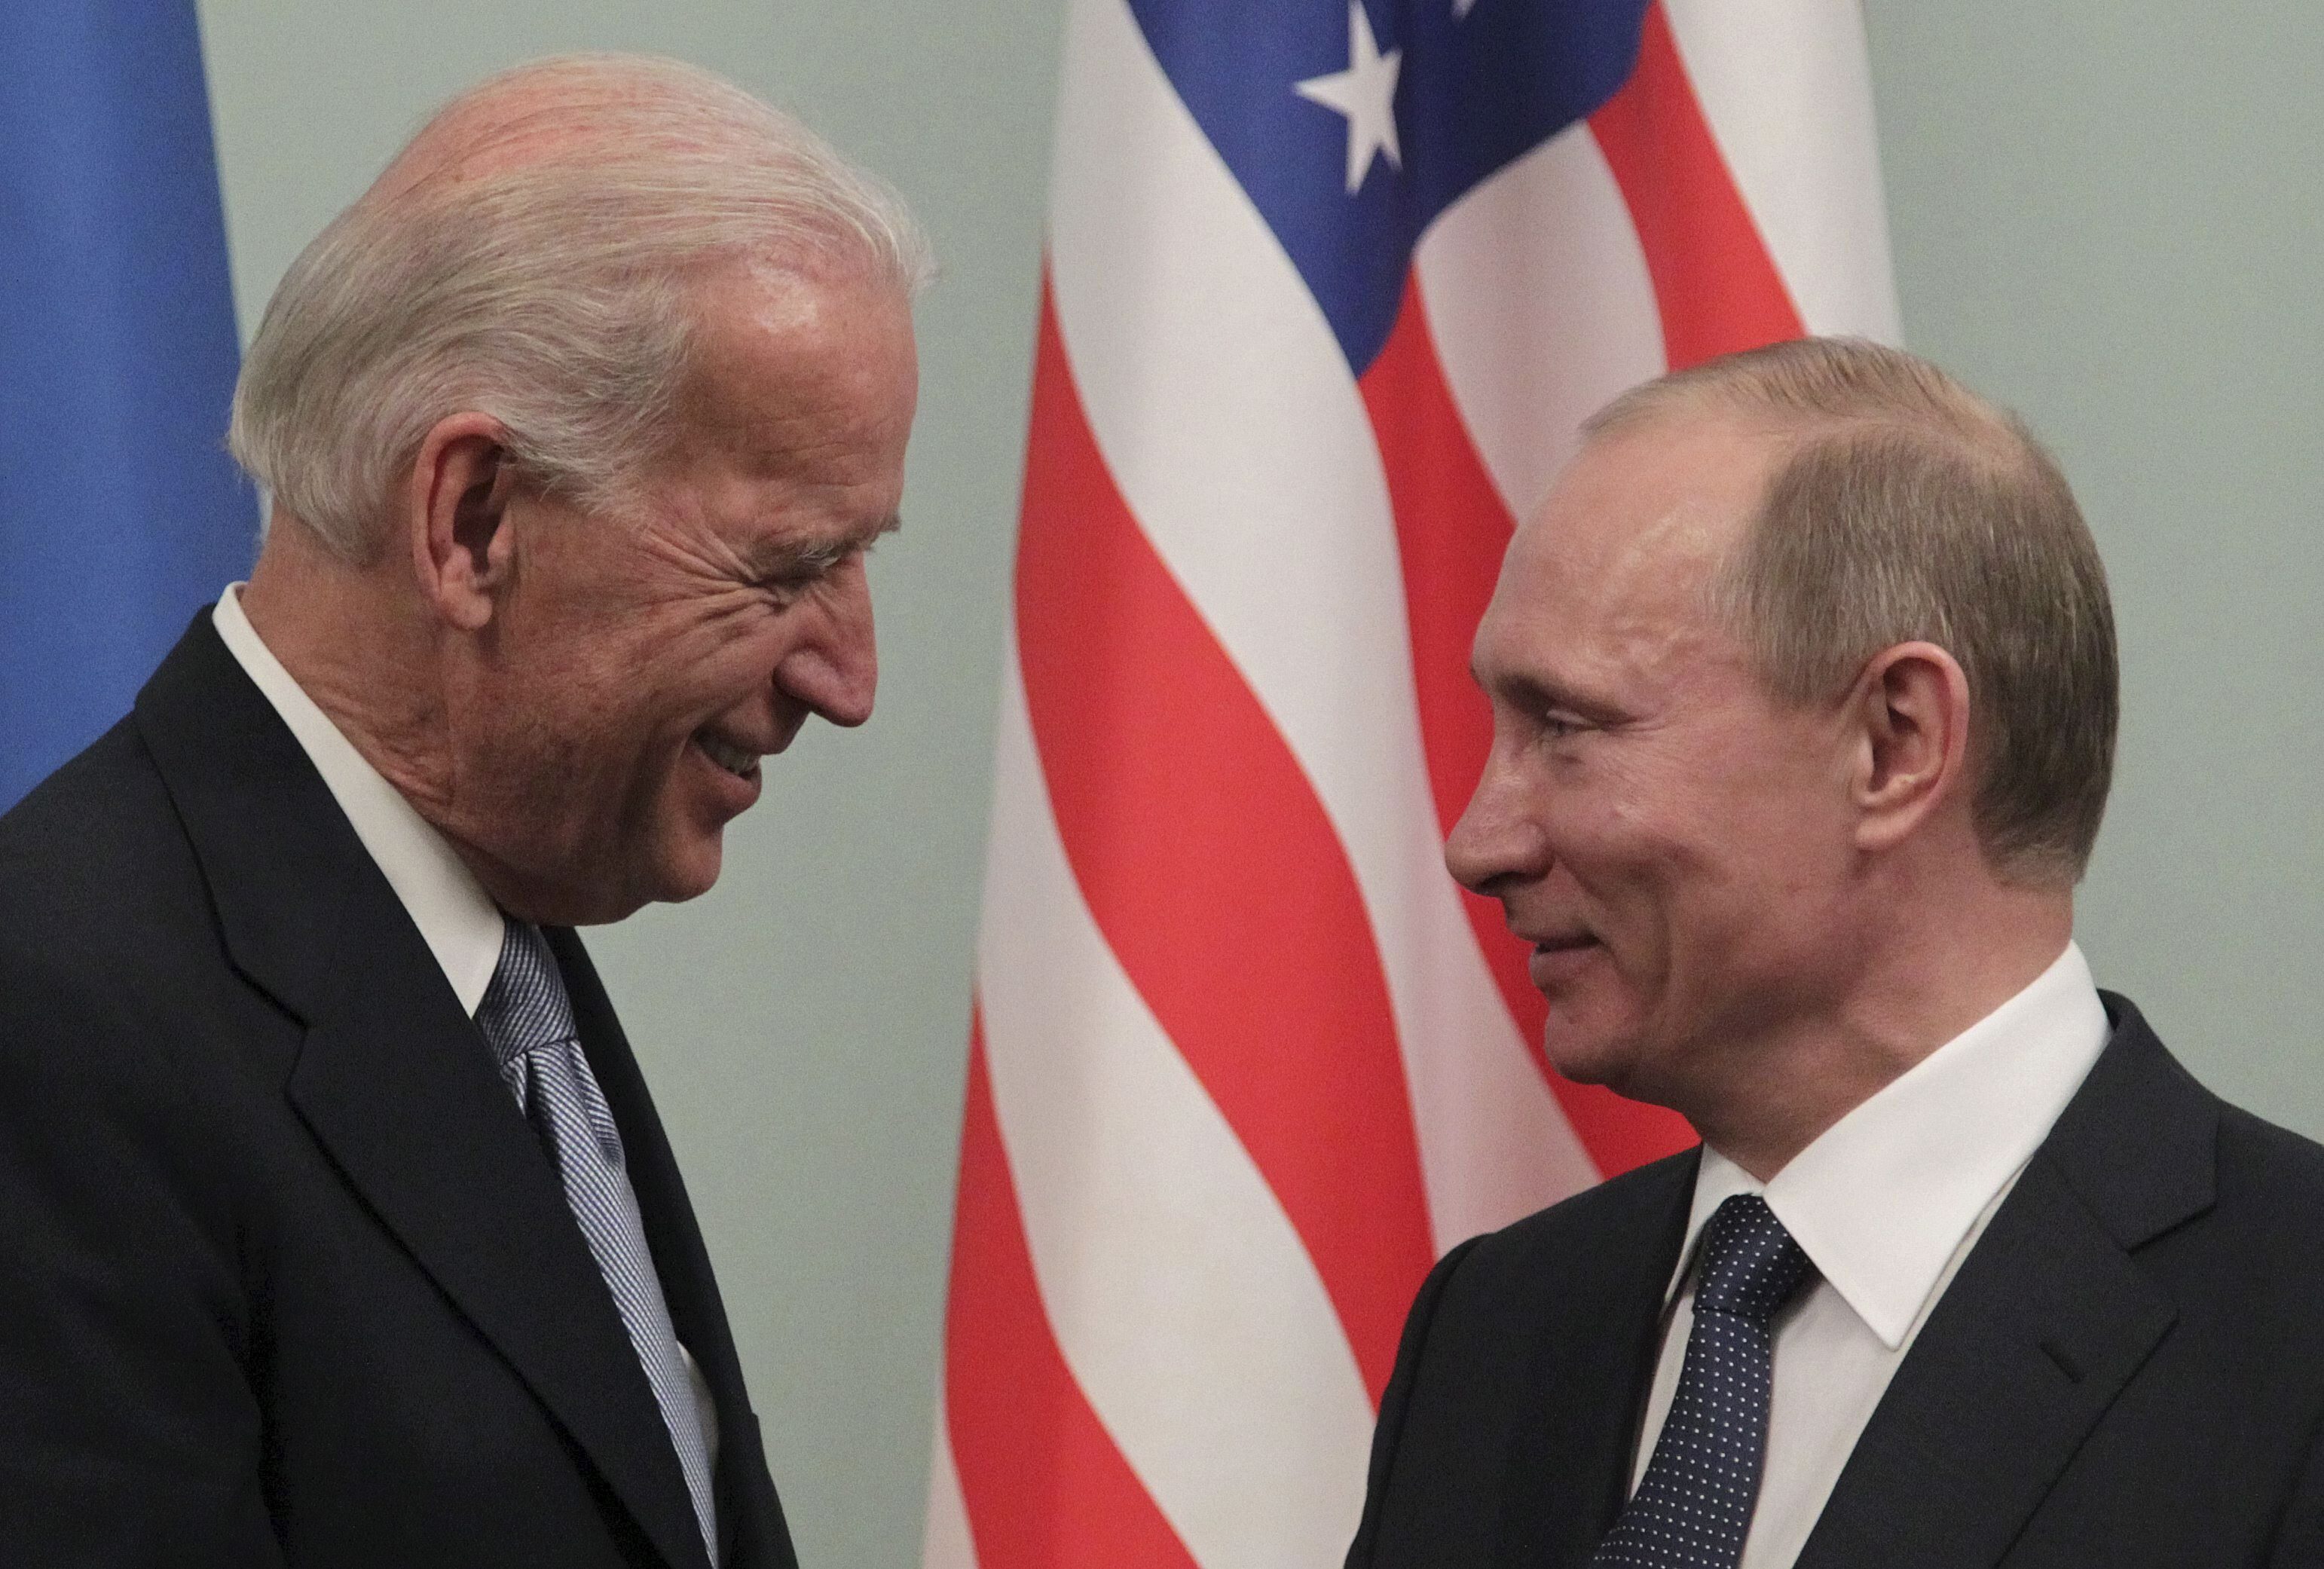 El entonces vicepresidente estadounidense, Joe Biden, conversa con el primer ministro ruso, Vladimir Putin, durante el encuentro que mantuvieron en Moscú, en marzo de 2011. Archivo